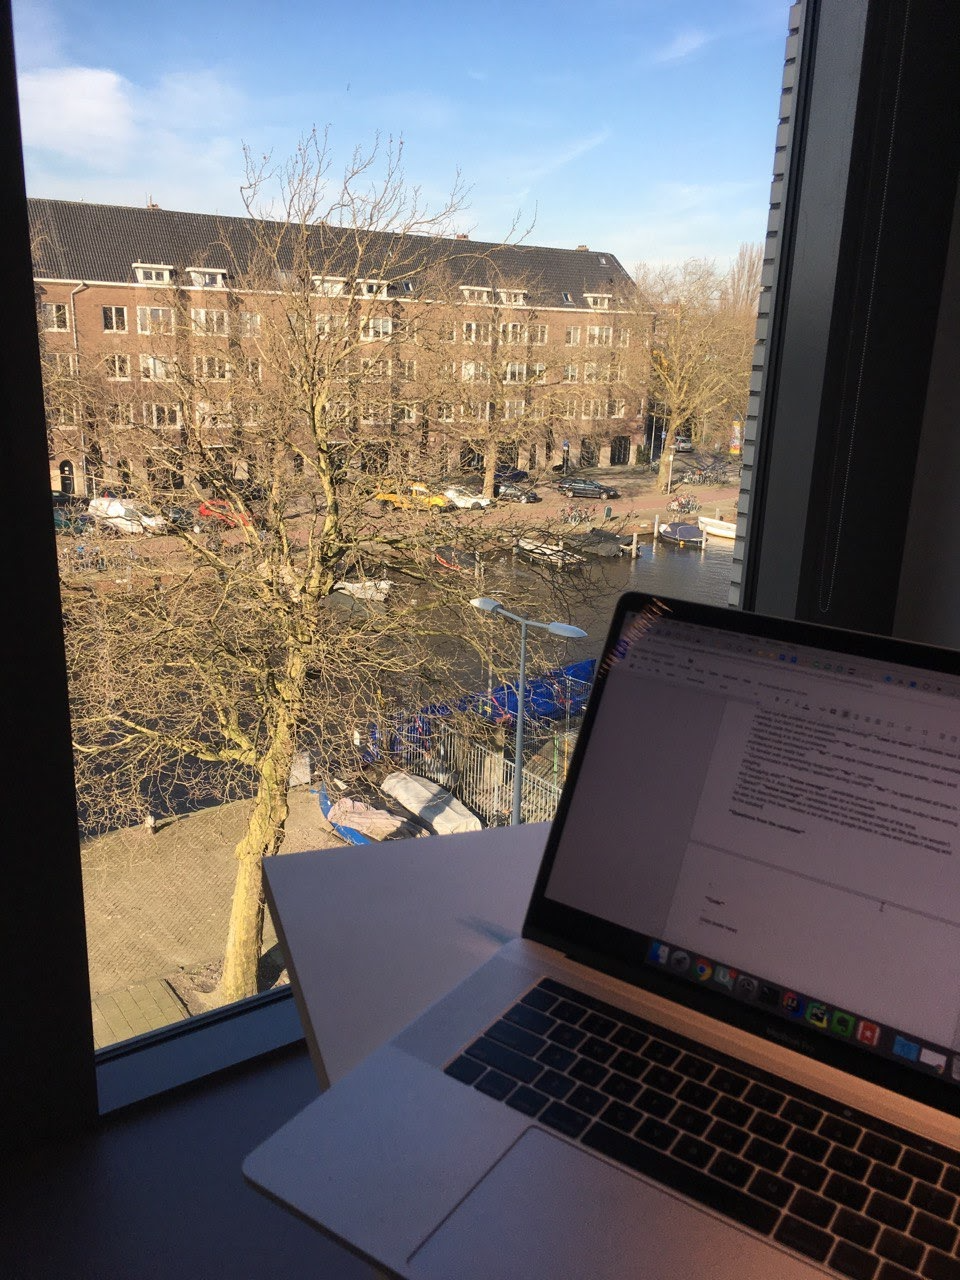 [Личный опыт] Еще про работу в Uber в Амстердаме: интервью, рост внутри компании, коммуникации - 4